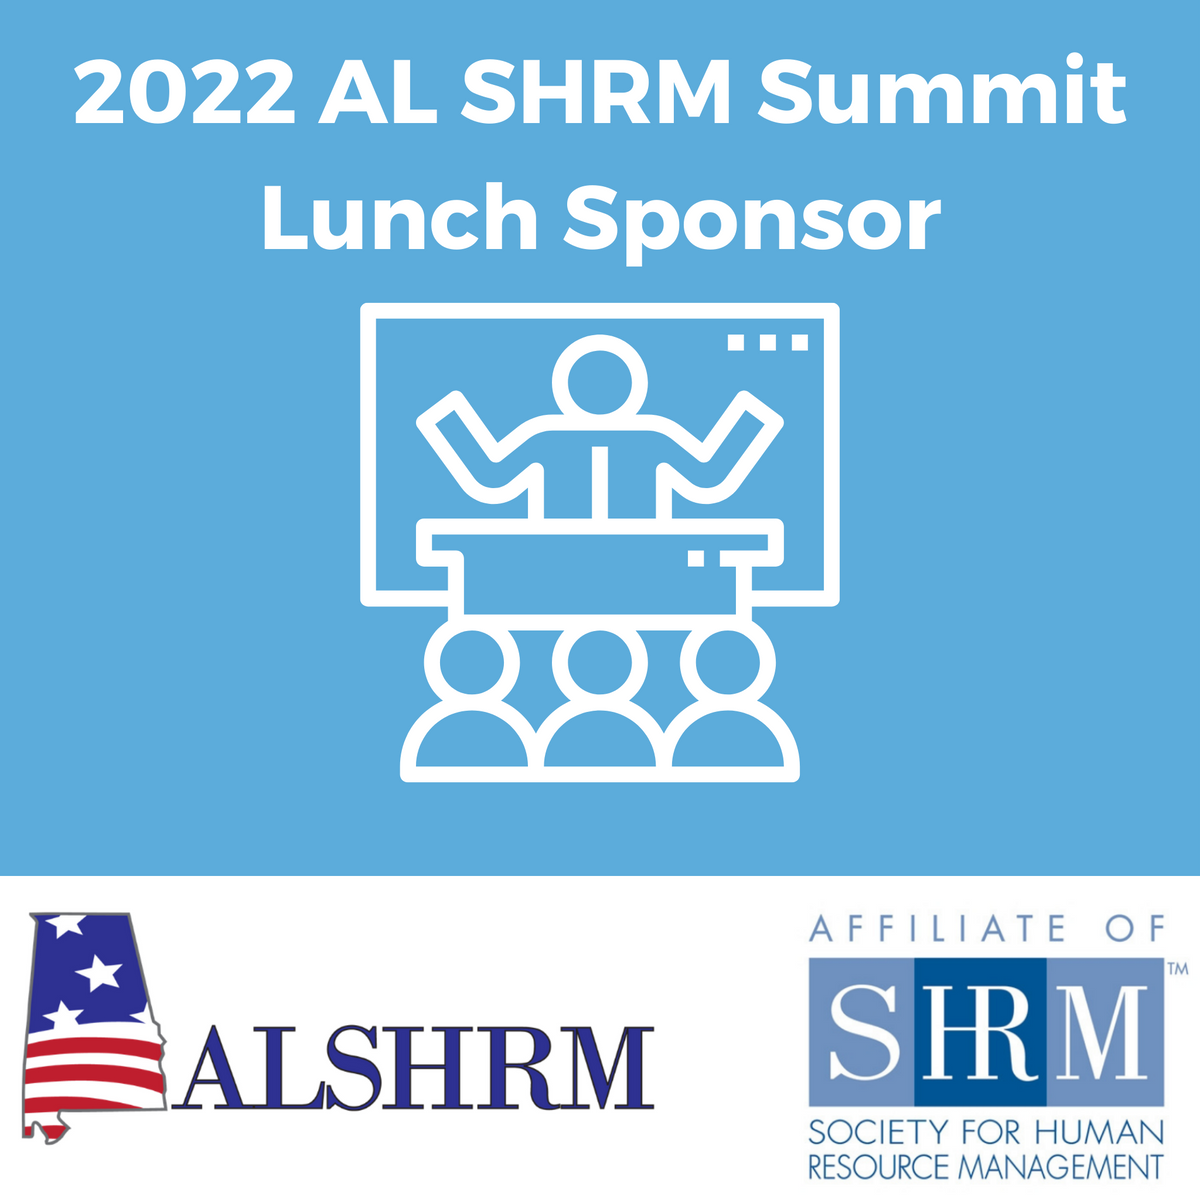 2022 AL SHRM Summit Lunch Sponsor